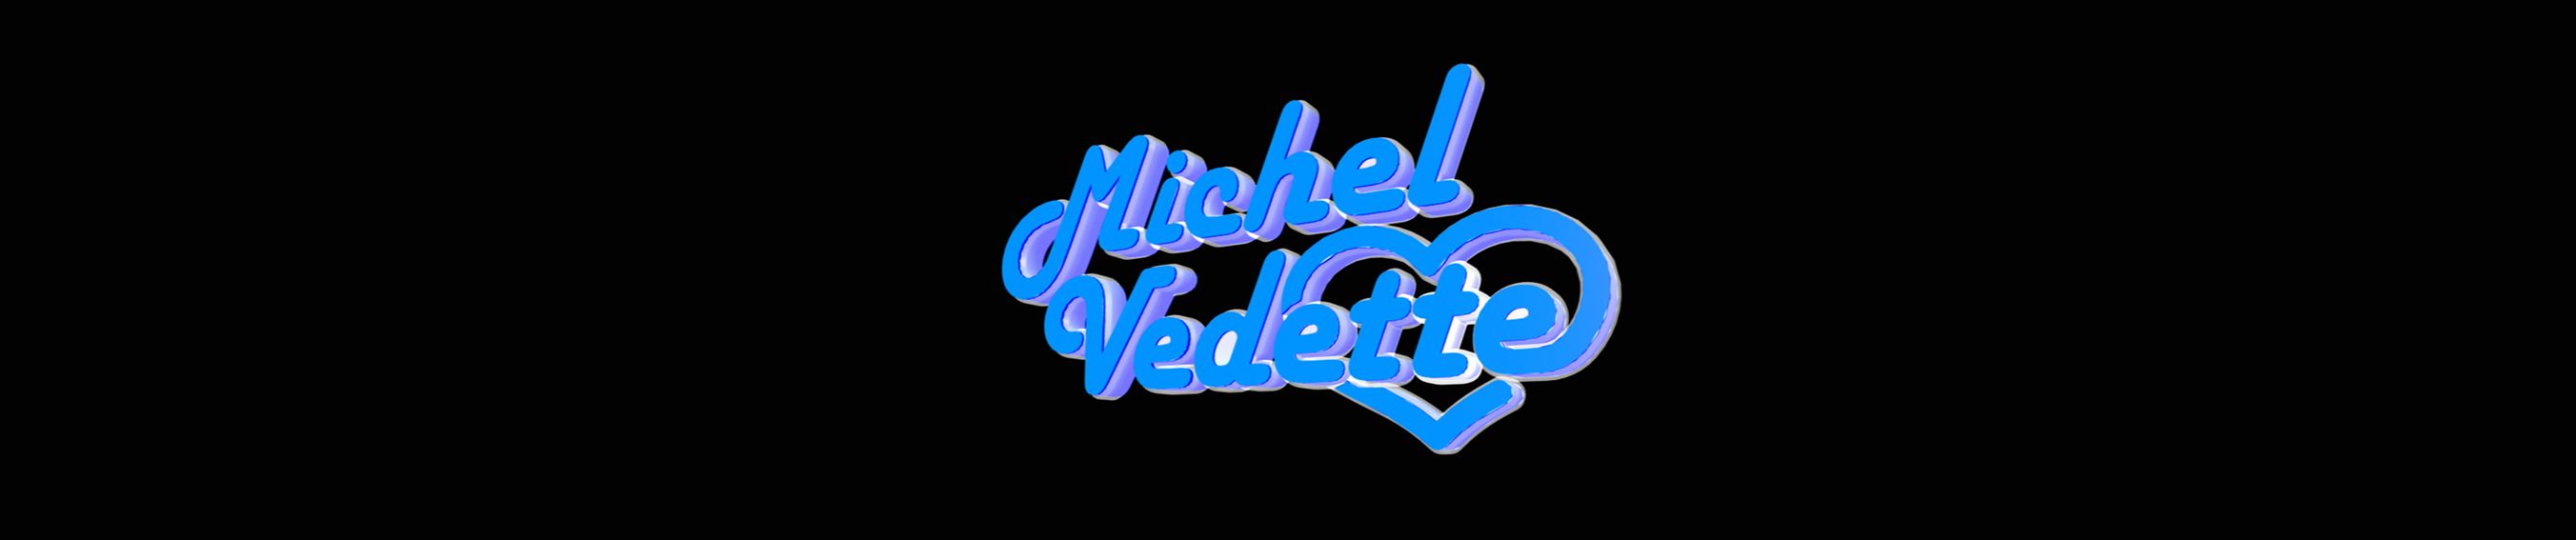 Stream Le Cruiser (et voilà!) by Michel Vedette Music | Listen online for  free on SoundCloud